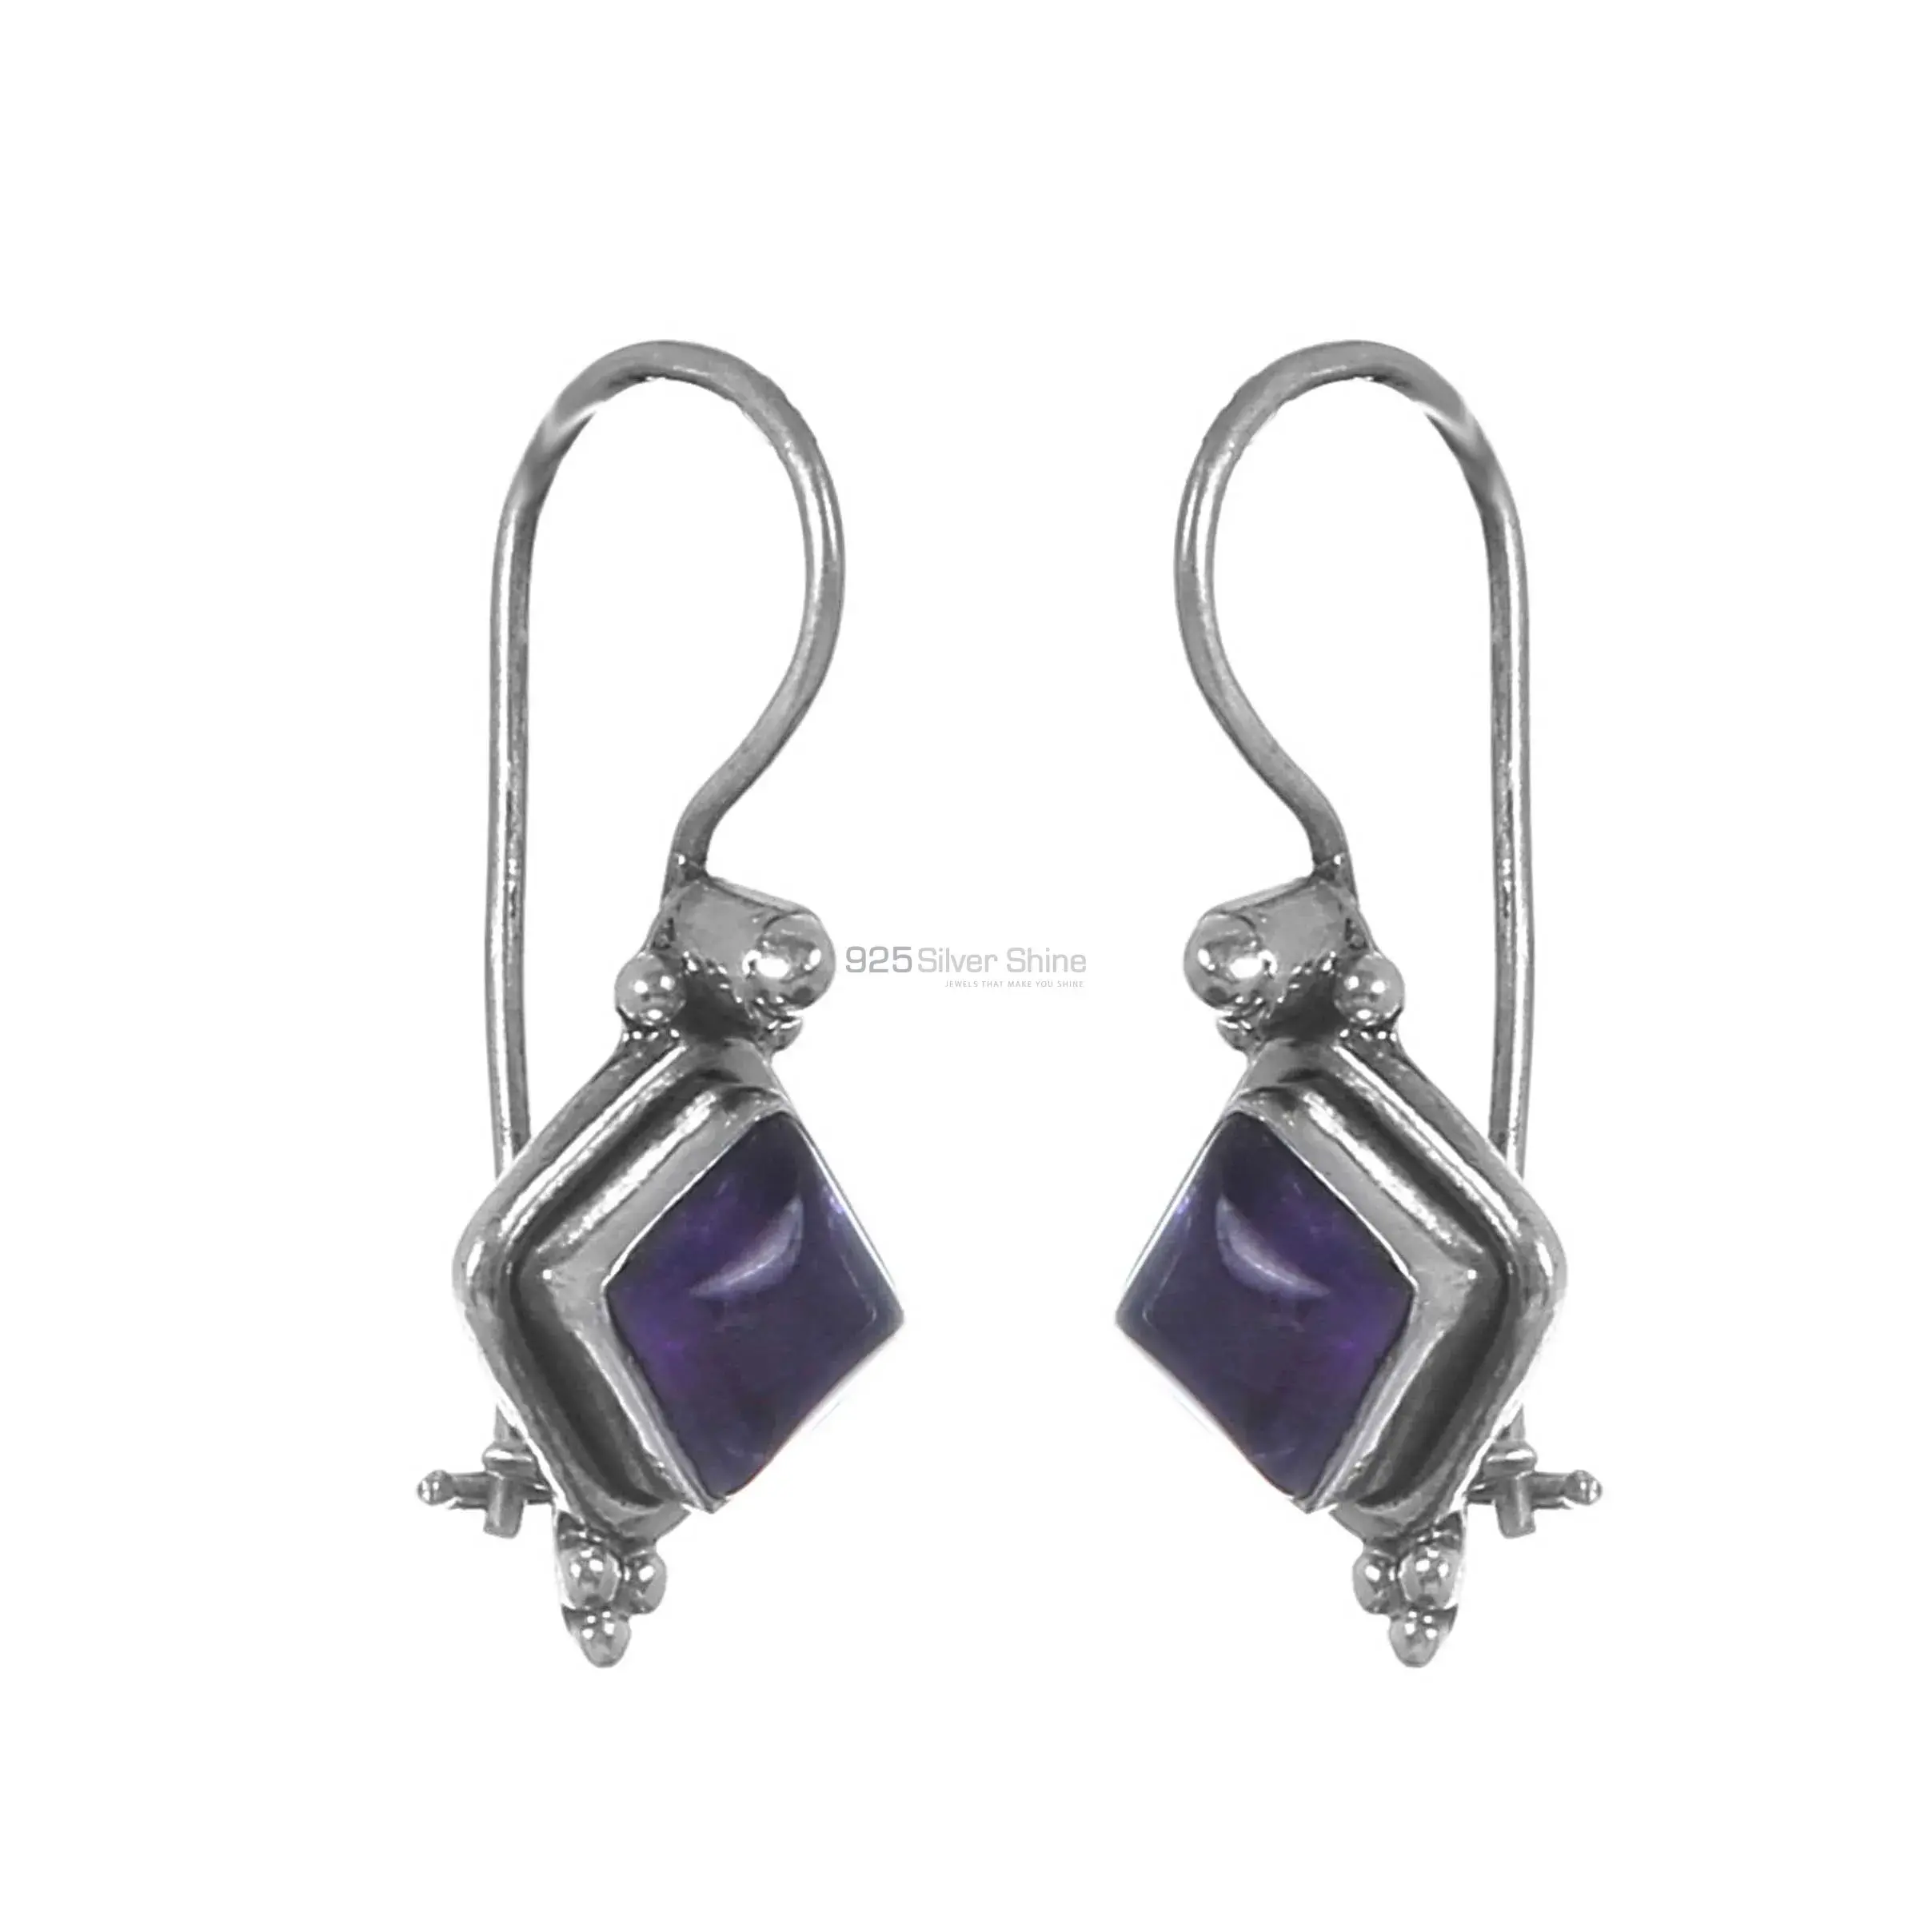 Wholesale Amethyst Gemstone Earrings In 925 Silver Jewelry 925SE212_0